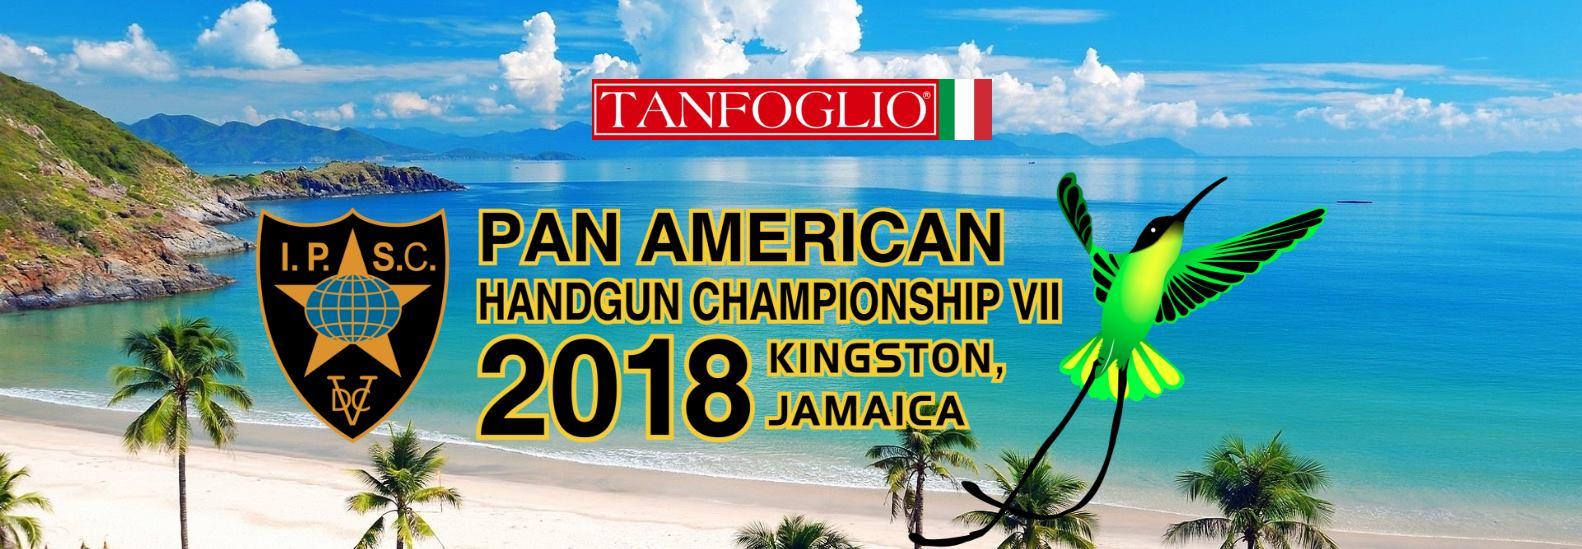 Pan American Handgun Championship VII